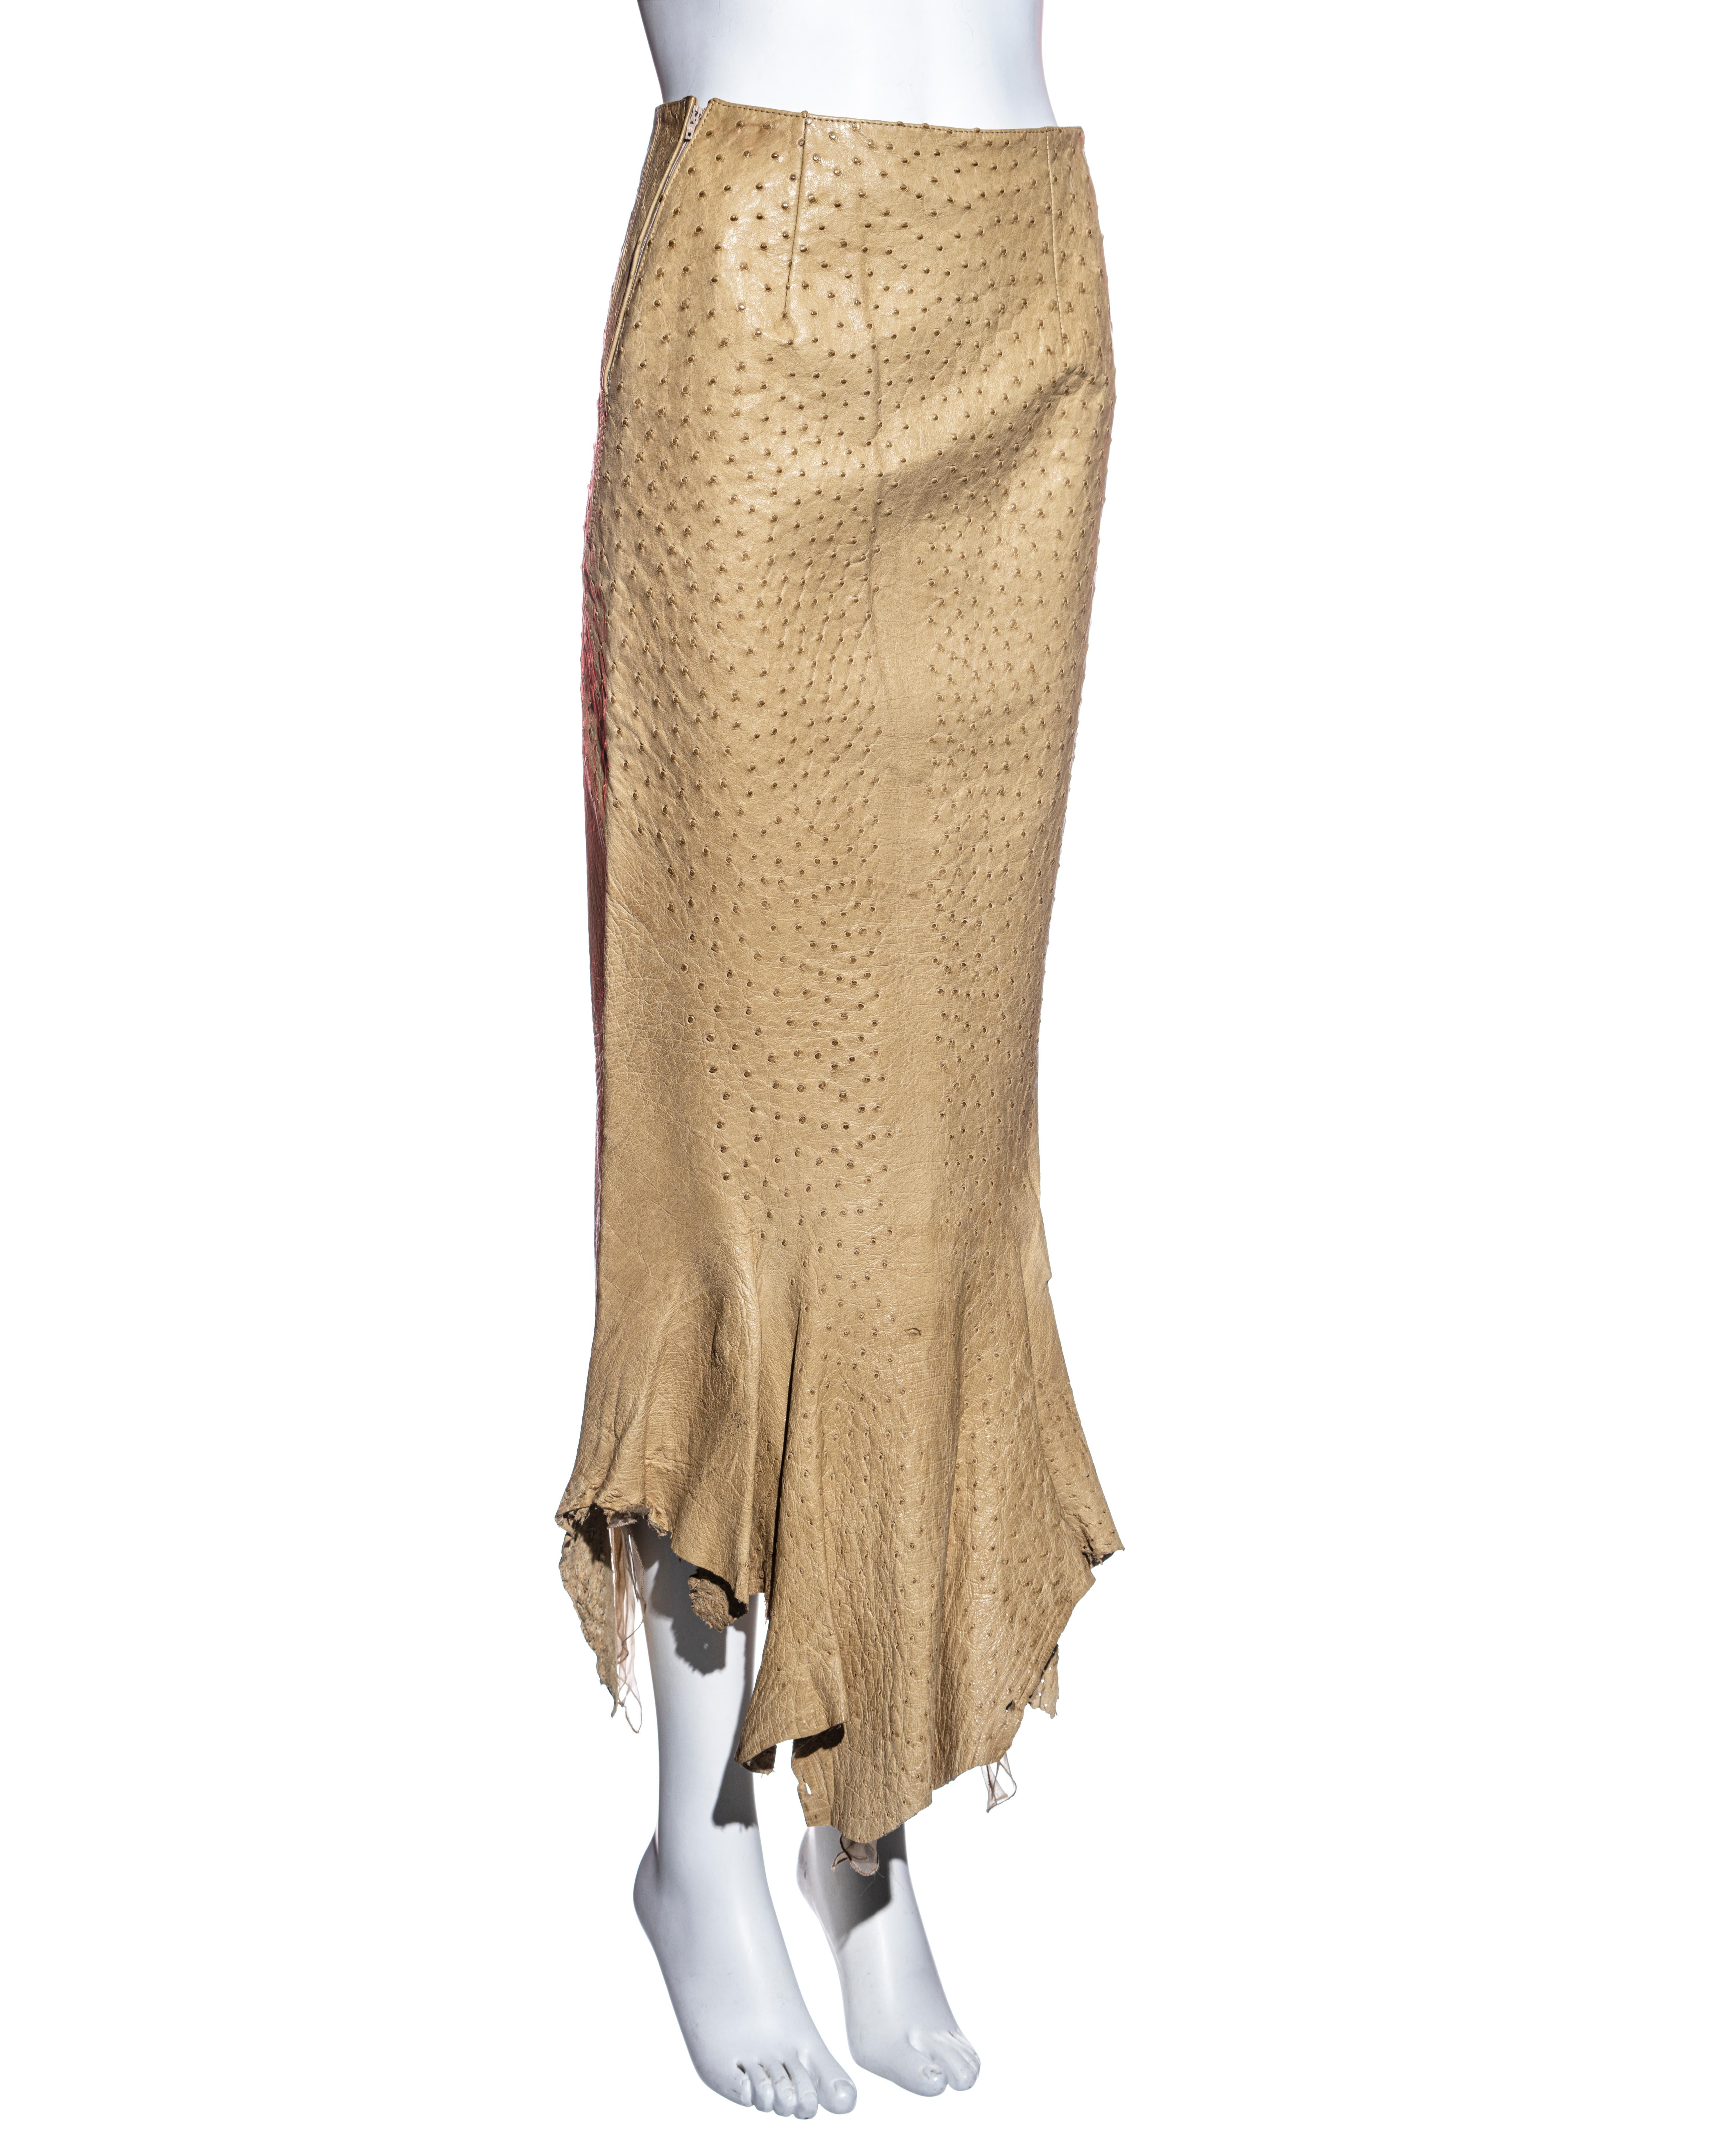  Jupe et ceinture en cuir d'autruche beige Gianfranco Ferre, P/E 2000 Pour femmes 